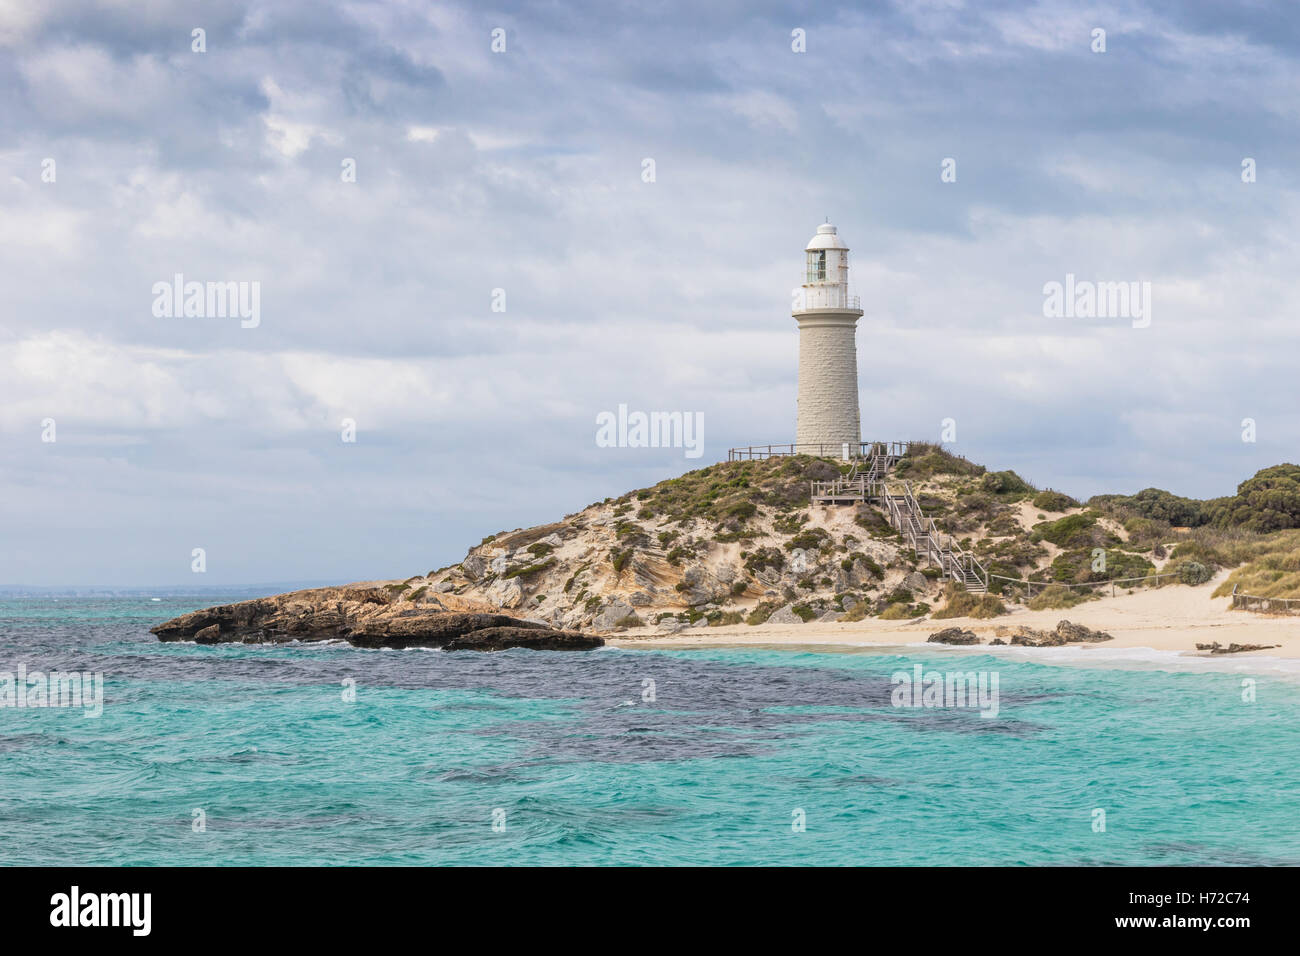 Ciel nuageux sur Pinky Beach et phare de Bathurst à Rottnest Island, près de Perth en Australie occidentale. Banque D'Images